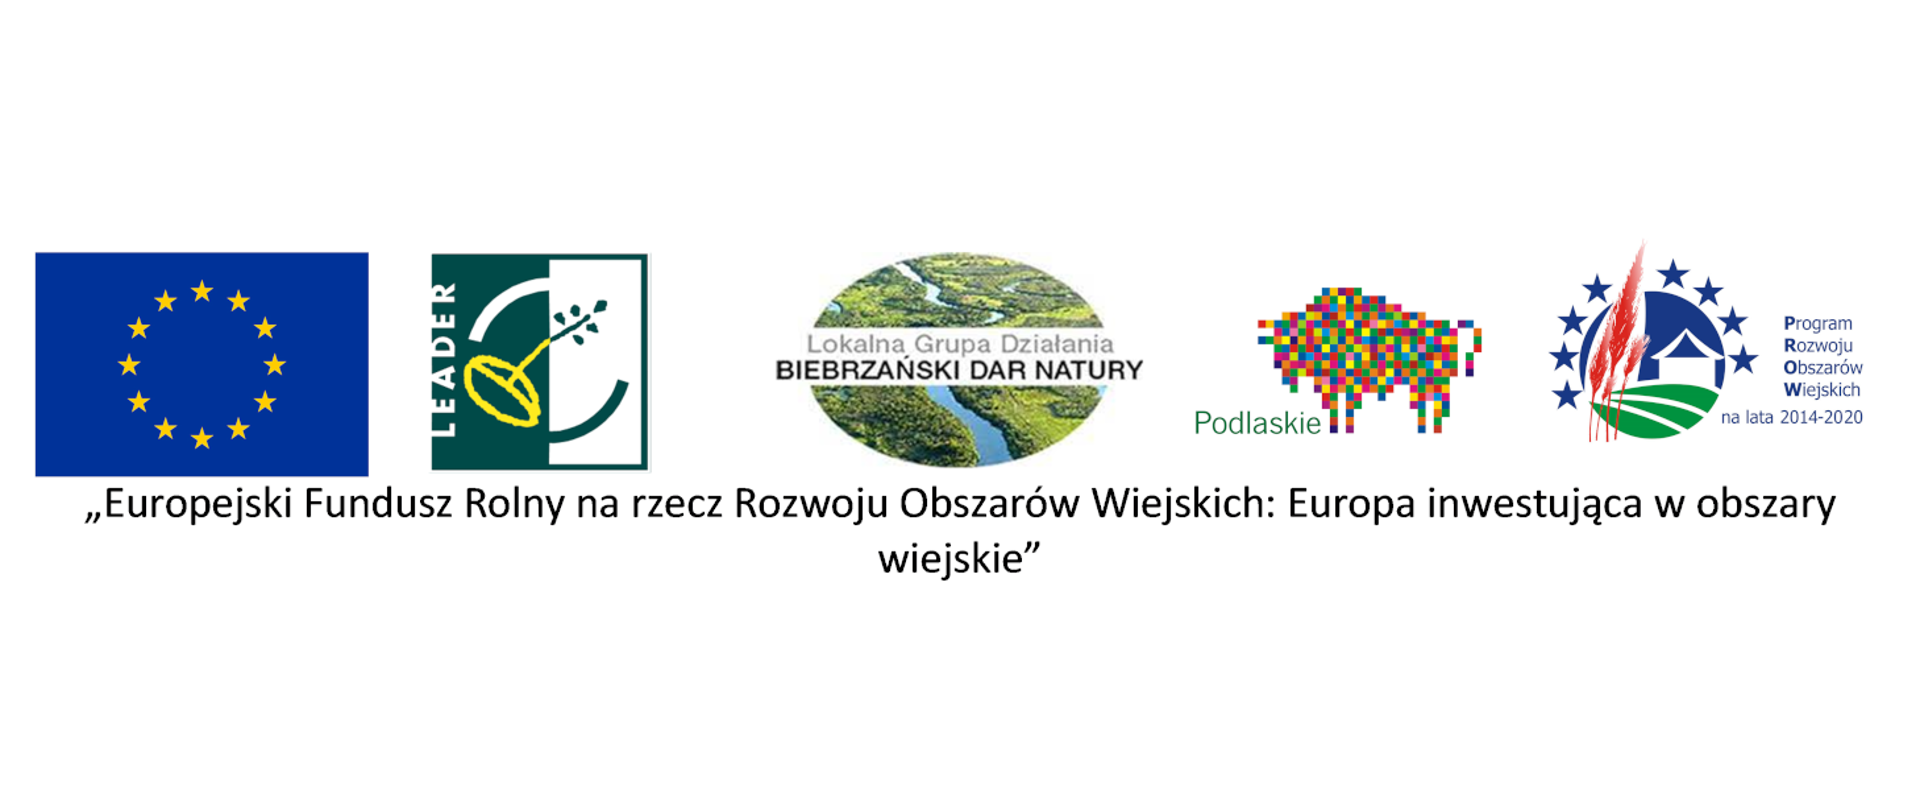 Loga: UE, LEADER, LGD-BDN, Województwo Podlaskie, PROW 2014-2020
„Europejski Fundusz Rolny na rzecz Rozwoju Obszarów Wiejskich: Europa inwestująca w obszary wiejskie"